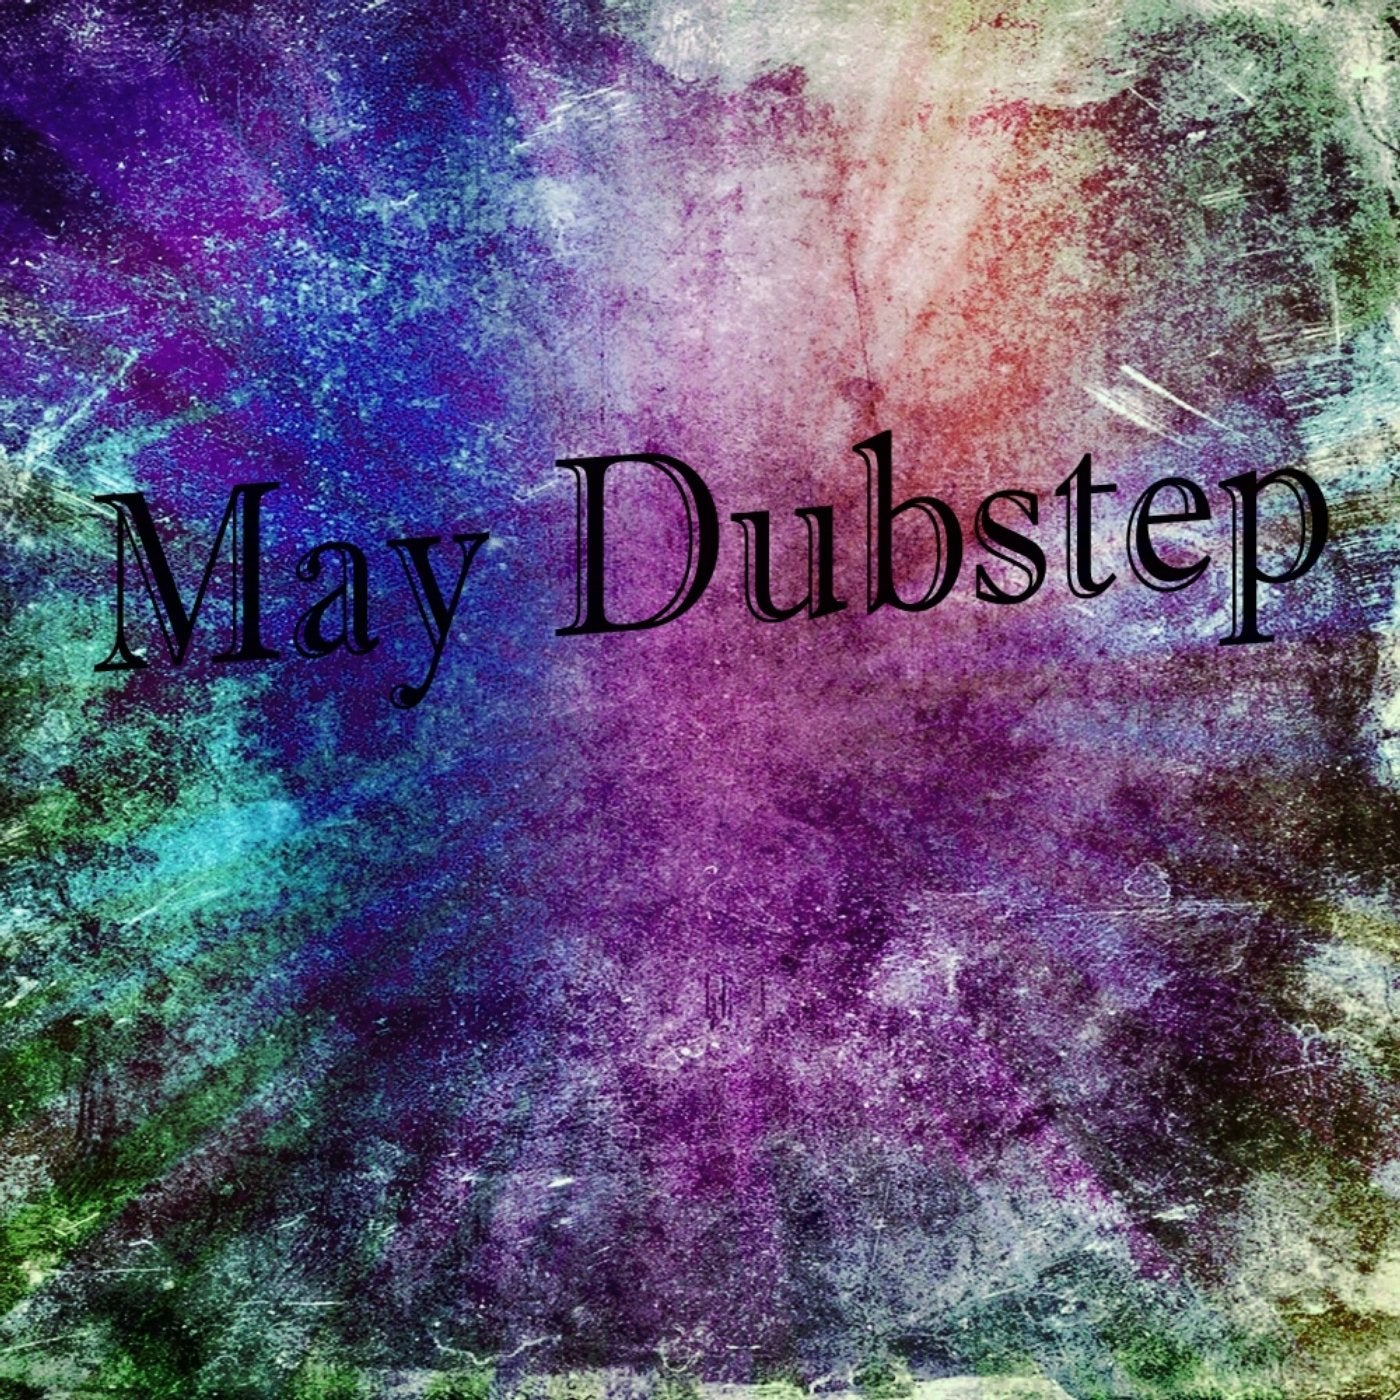 May Dubstep